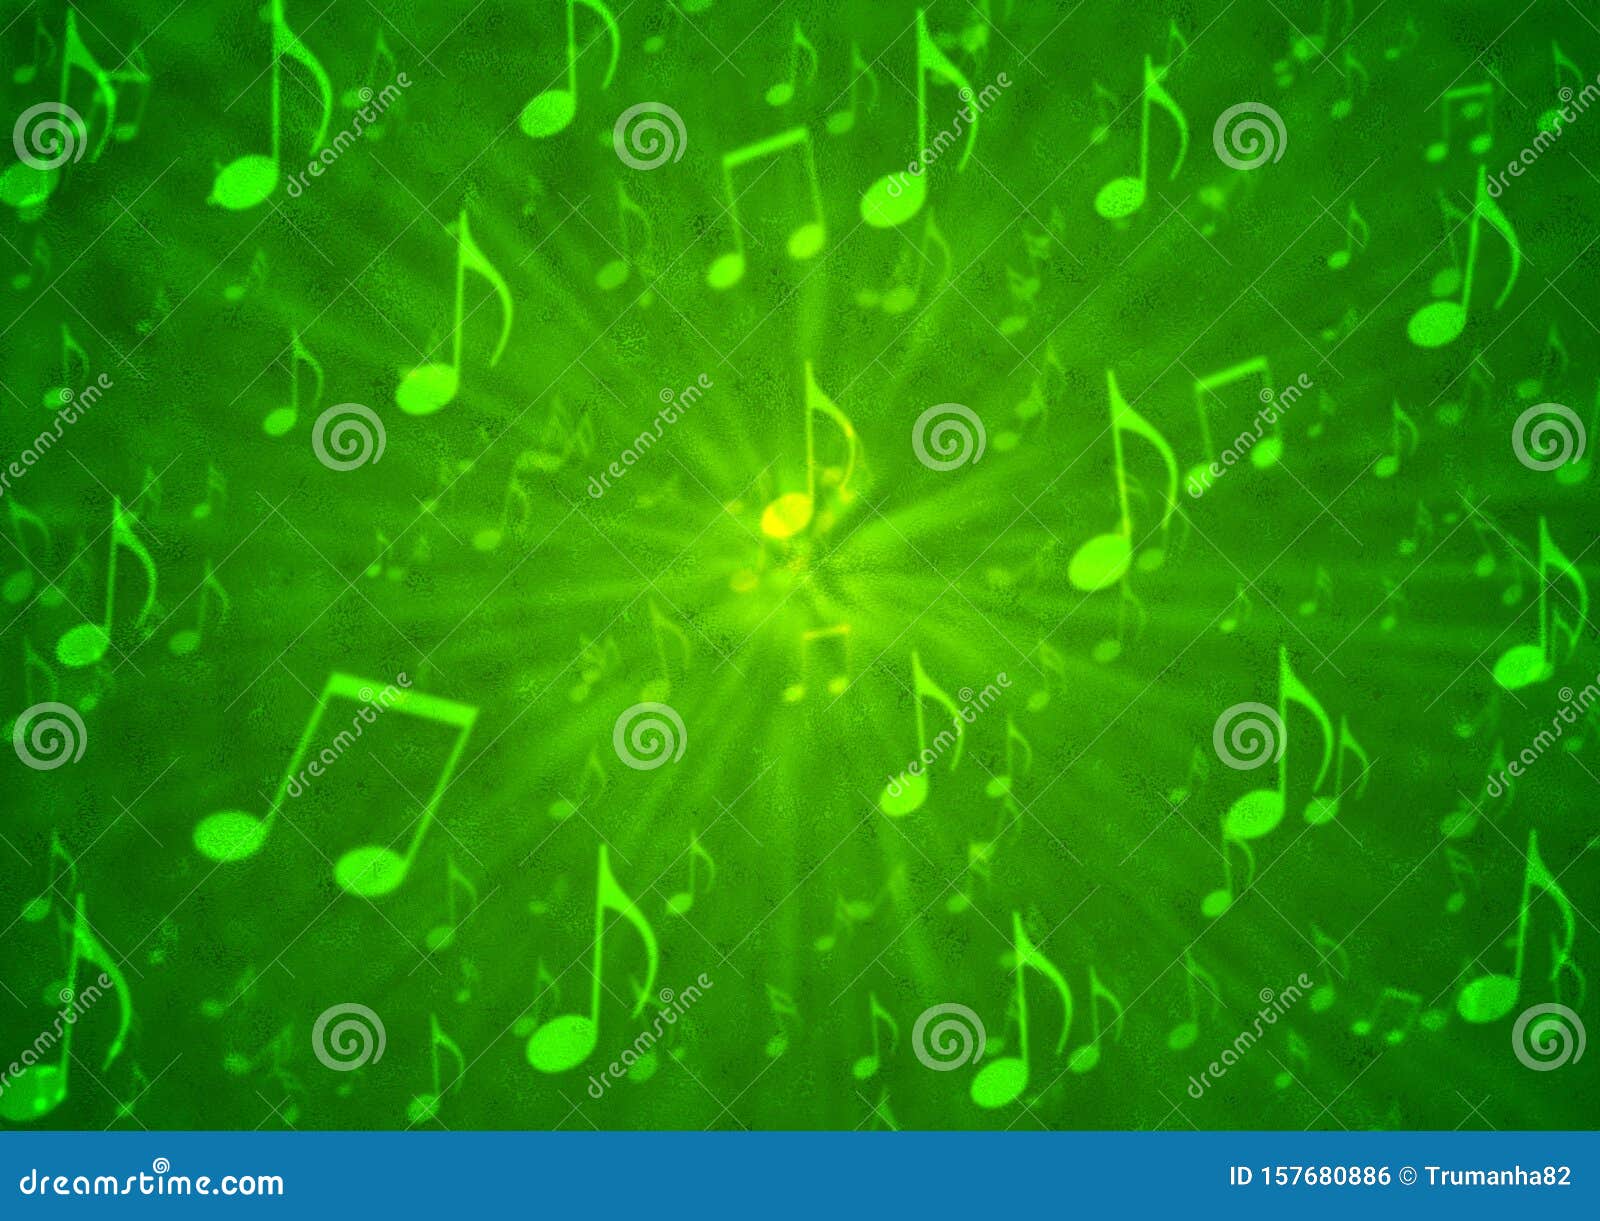 Khám phá một nền nhạc trừu tượng với các nốt nhạc phóng tác trên nền mờ xanh lá cây. Những hình ảnh này sẽ đưa bạn vào thế giới âm nhạc tràn đầy sáng tạo và đầy màu sắc. Hãy xem ngay để tận hưởng không gian âm nhạc đầy tính nghệ thuật này.